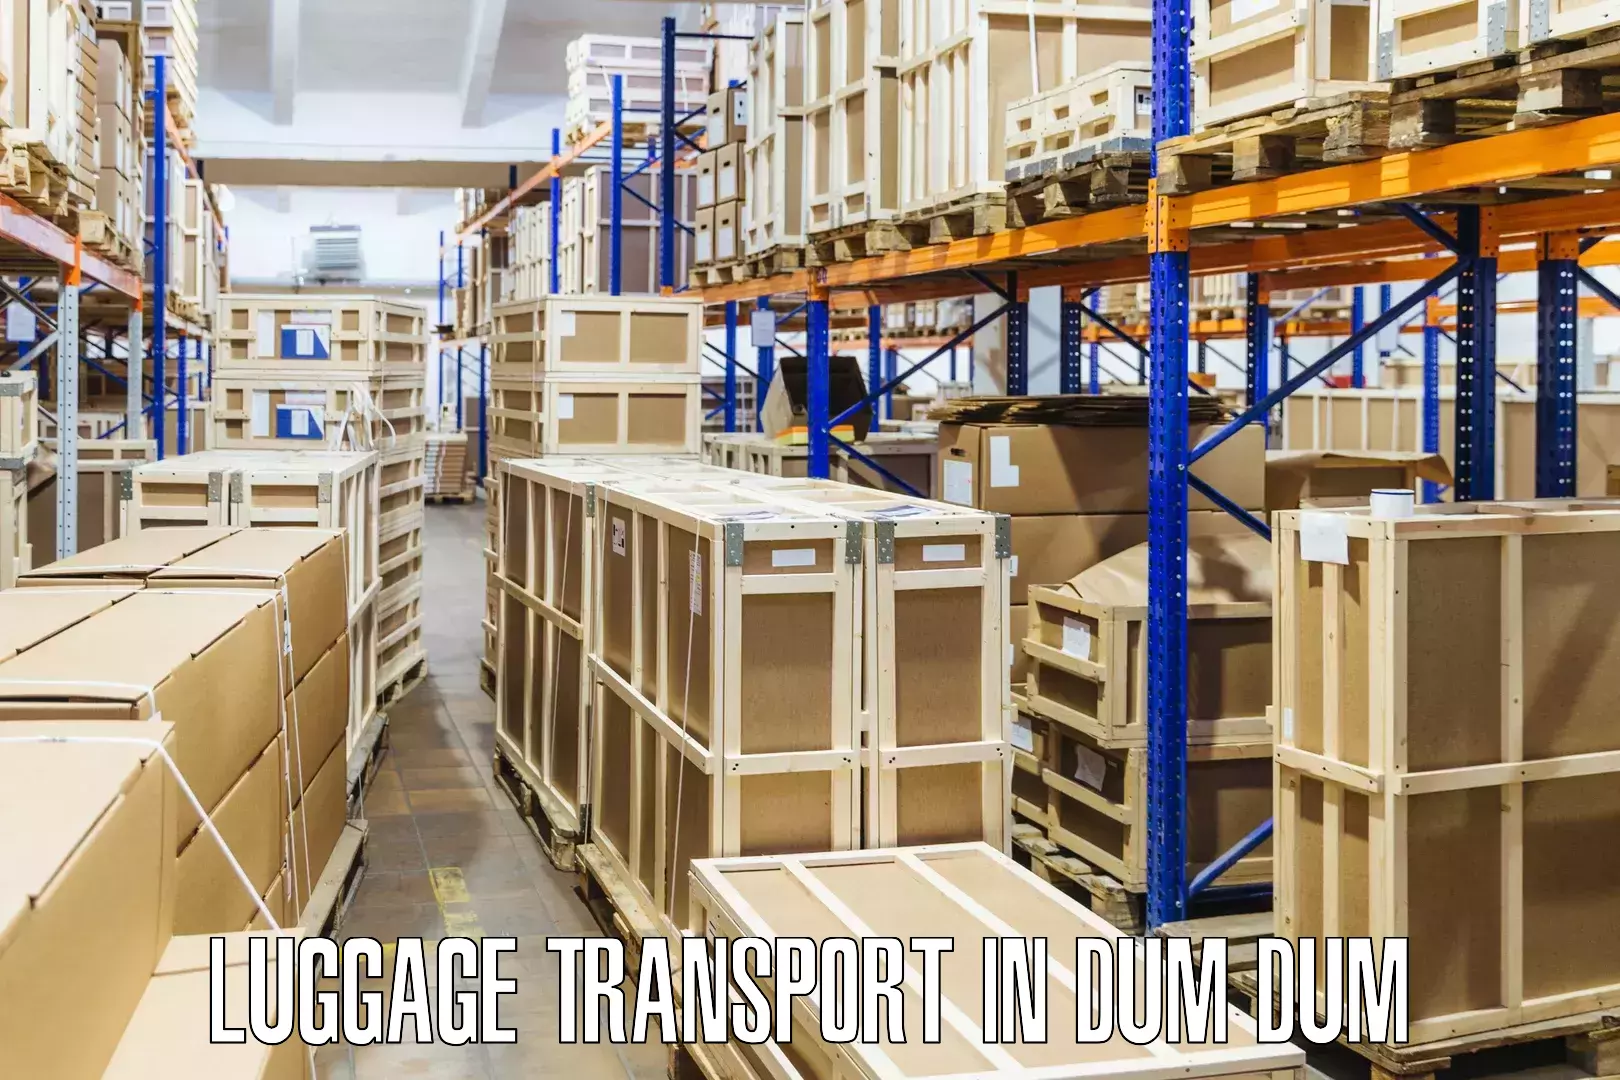 Regional luggage transport in Dum Dum